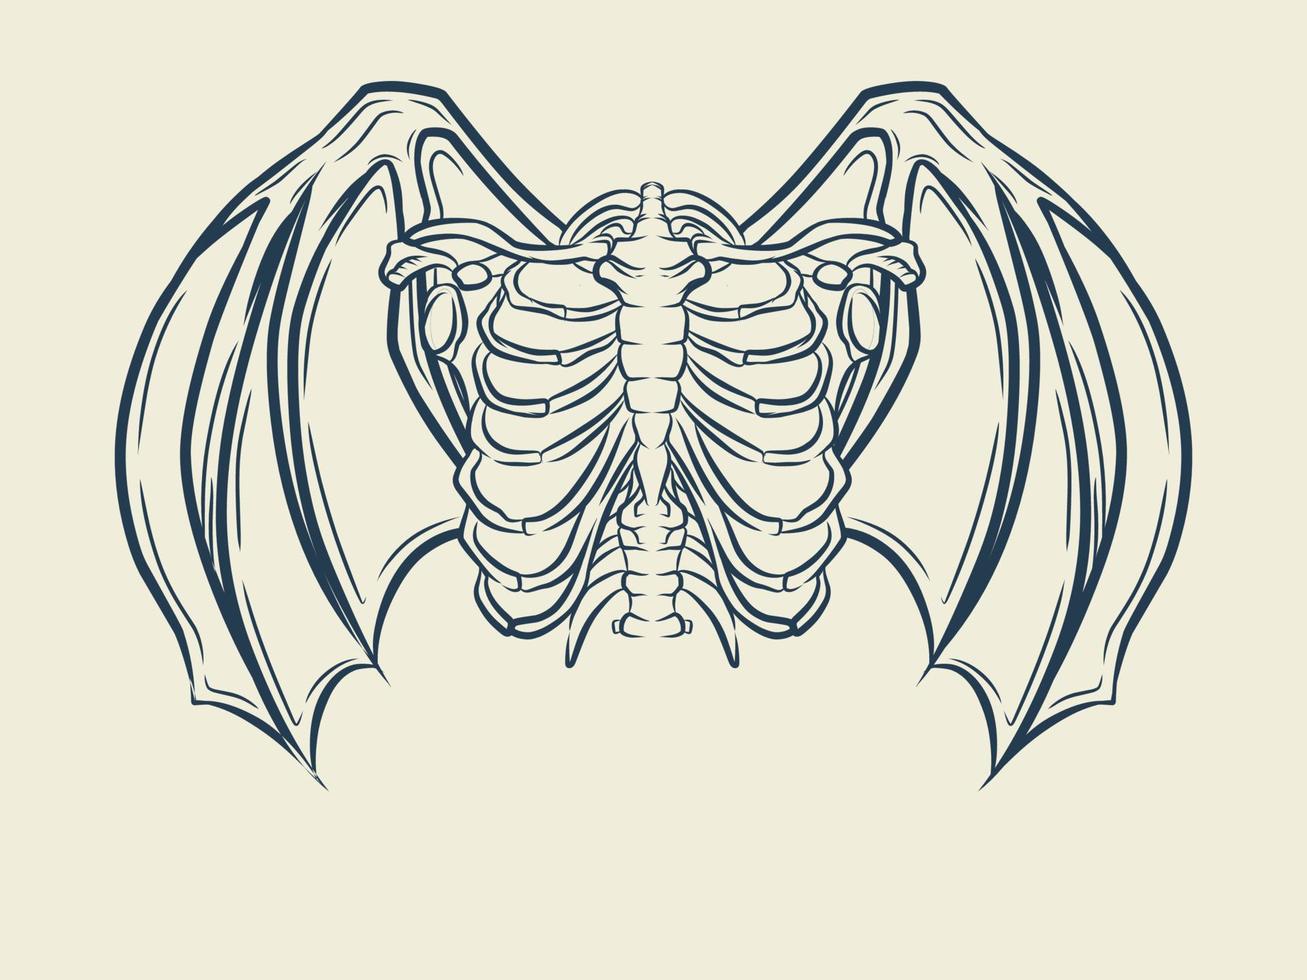 Devil skull and wings line art vector design